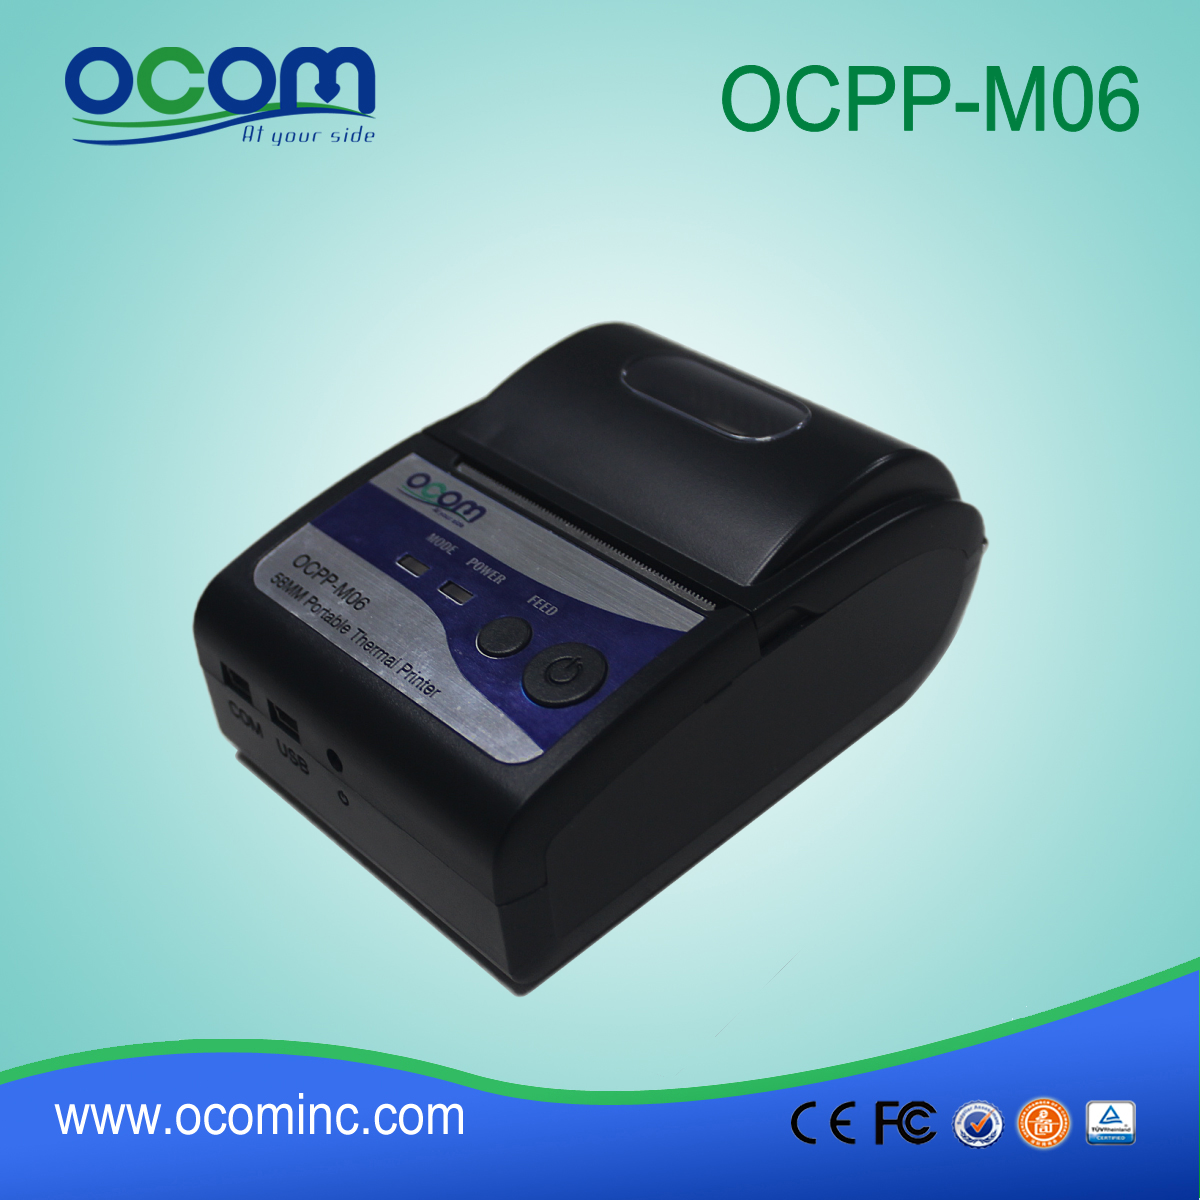 OCPP-M06: OCOM الساخن بيع 58mm ورخيصة طابعة بلوتوث، 58mm وطابعة بلوتوث